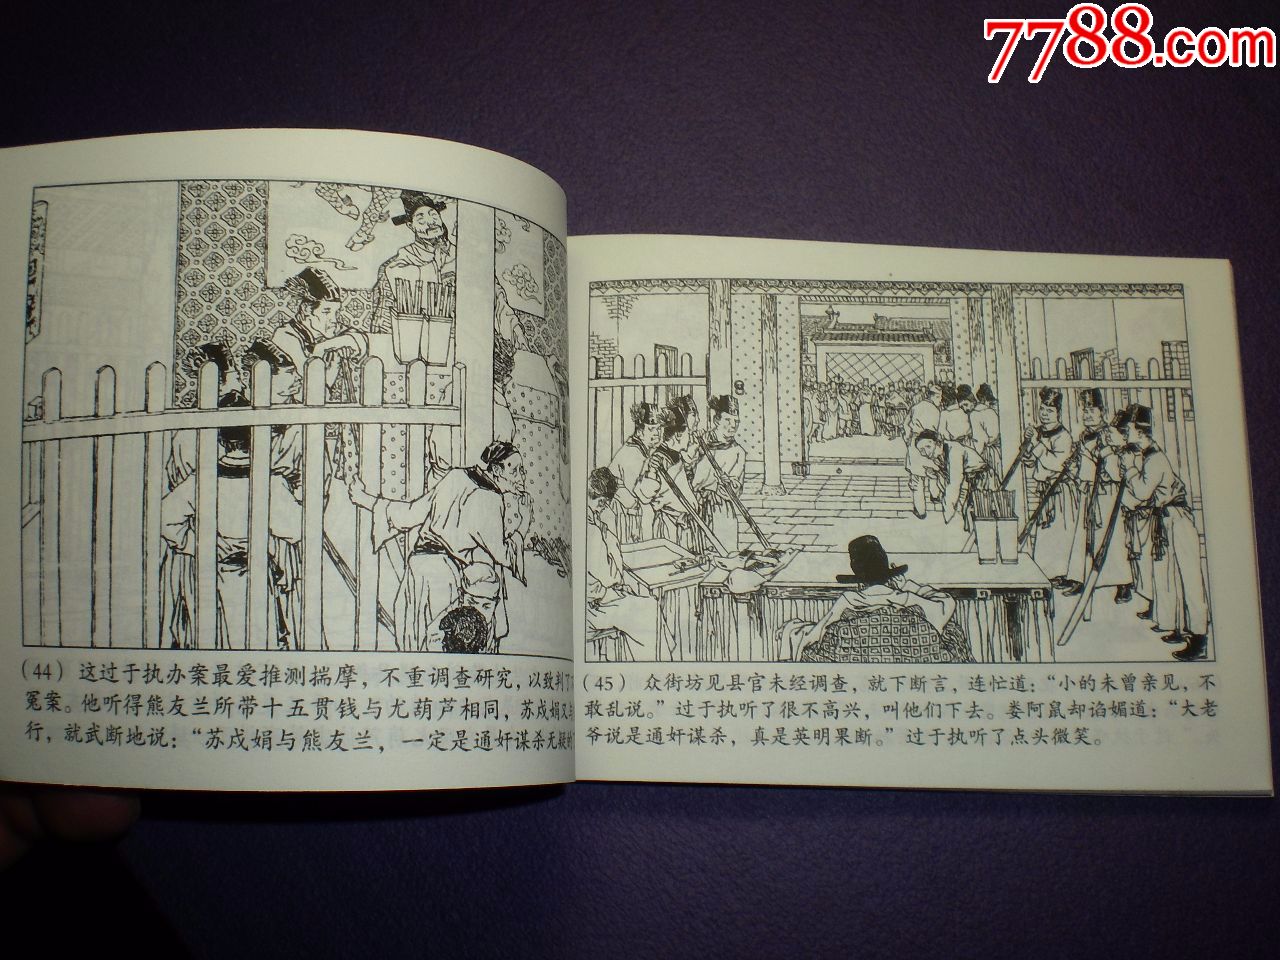 正版新书,连环画《十五贯》贺友直绘上美64开,正版新书,上海人民美术